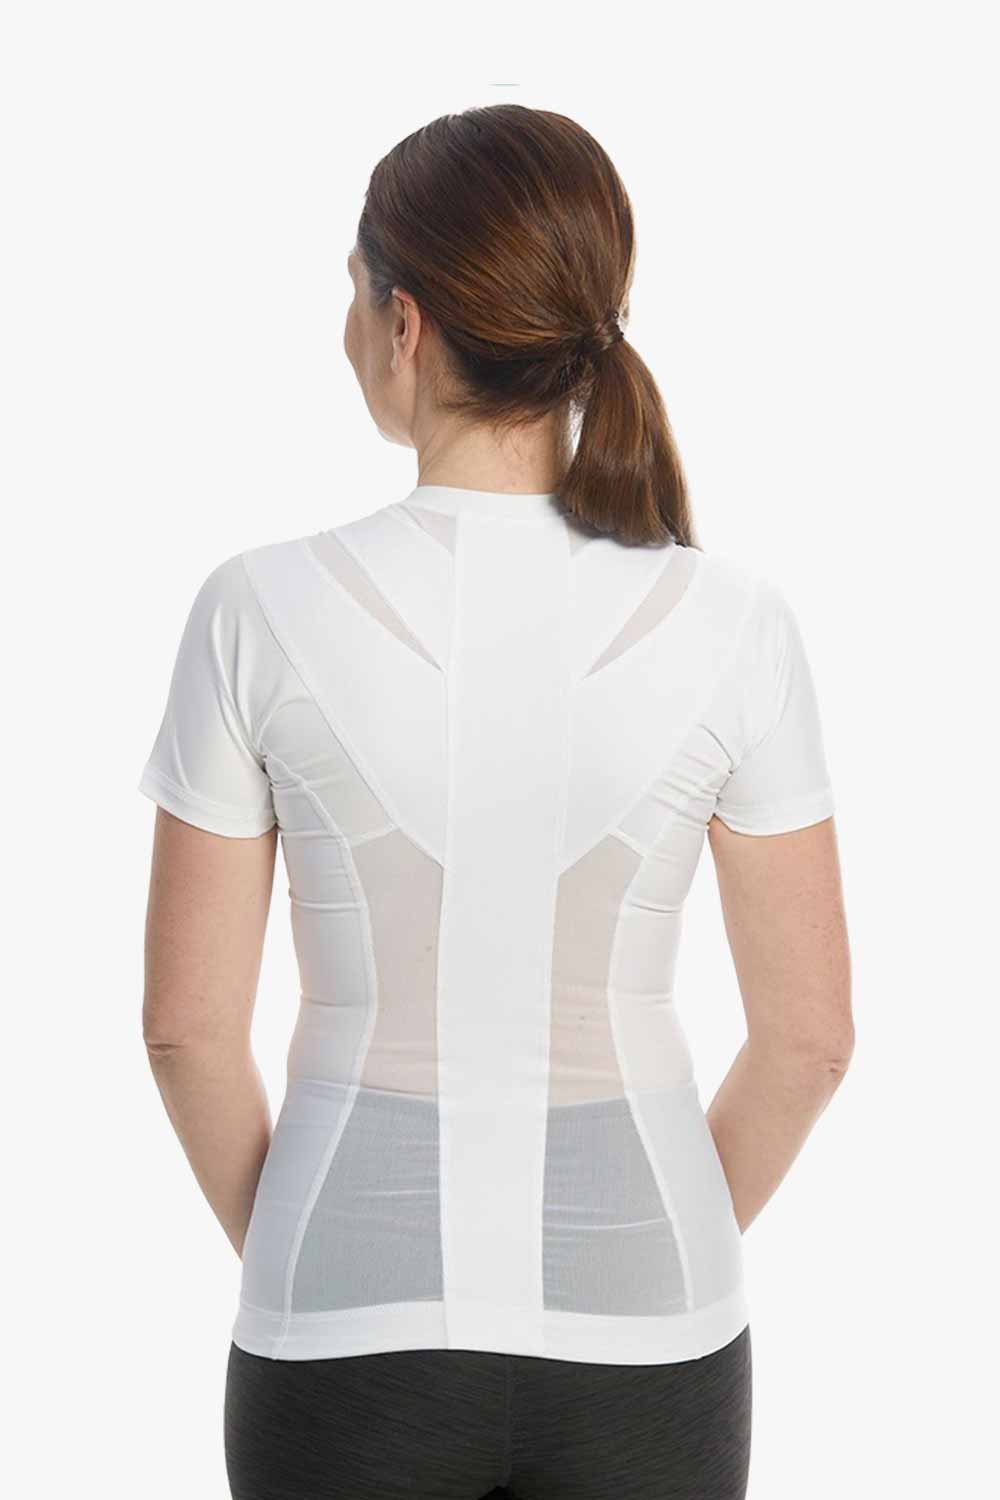 http://www.activeposture.co.uk/cdn/shop/files/anodyne_womens_posture_shirt_white_new_1.jpg?v=1683190225